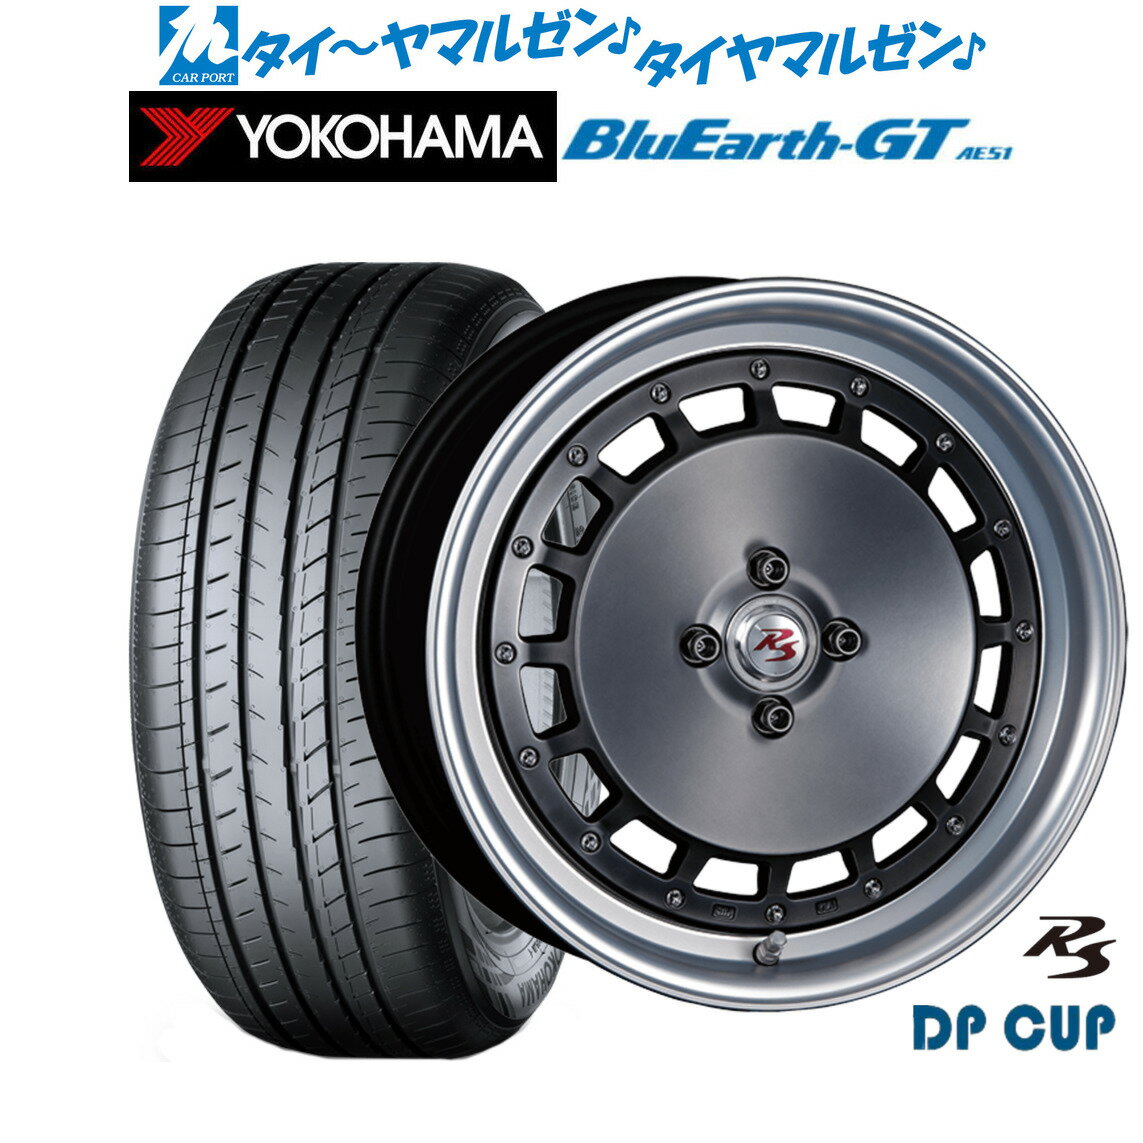 [5/20]割引クーポン配布新品 サマータイヤ ホイール4本セットクリムソン RS DP CUP モノブロック16インチ 6.5Jヨコハマ BluEarth ブルーアース GT (AE51) 205/45R16